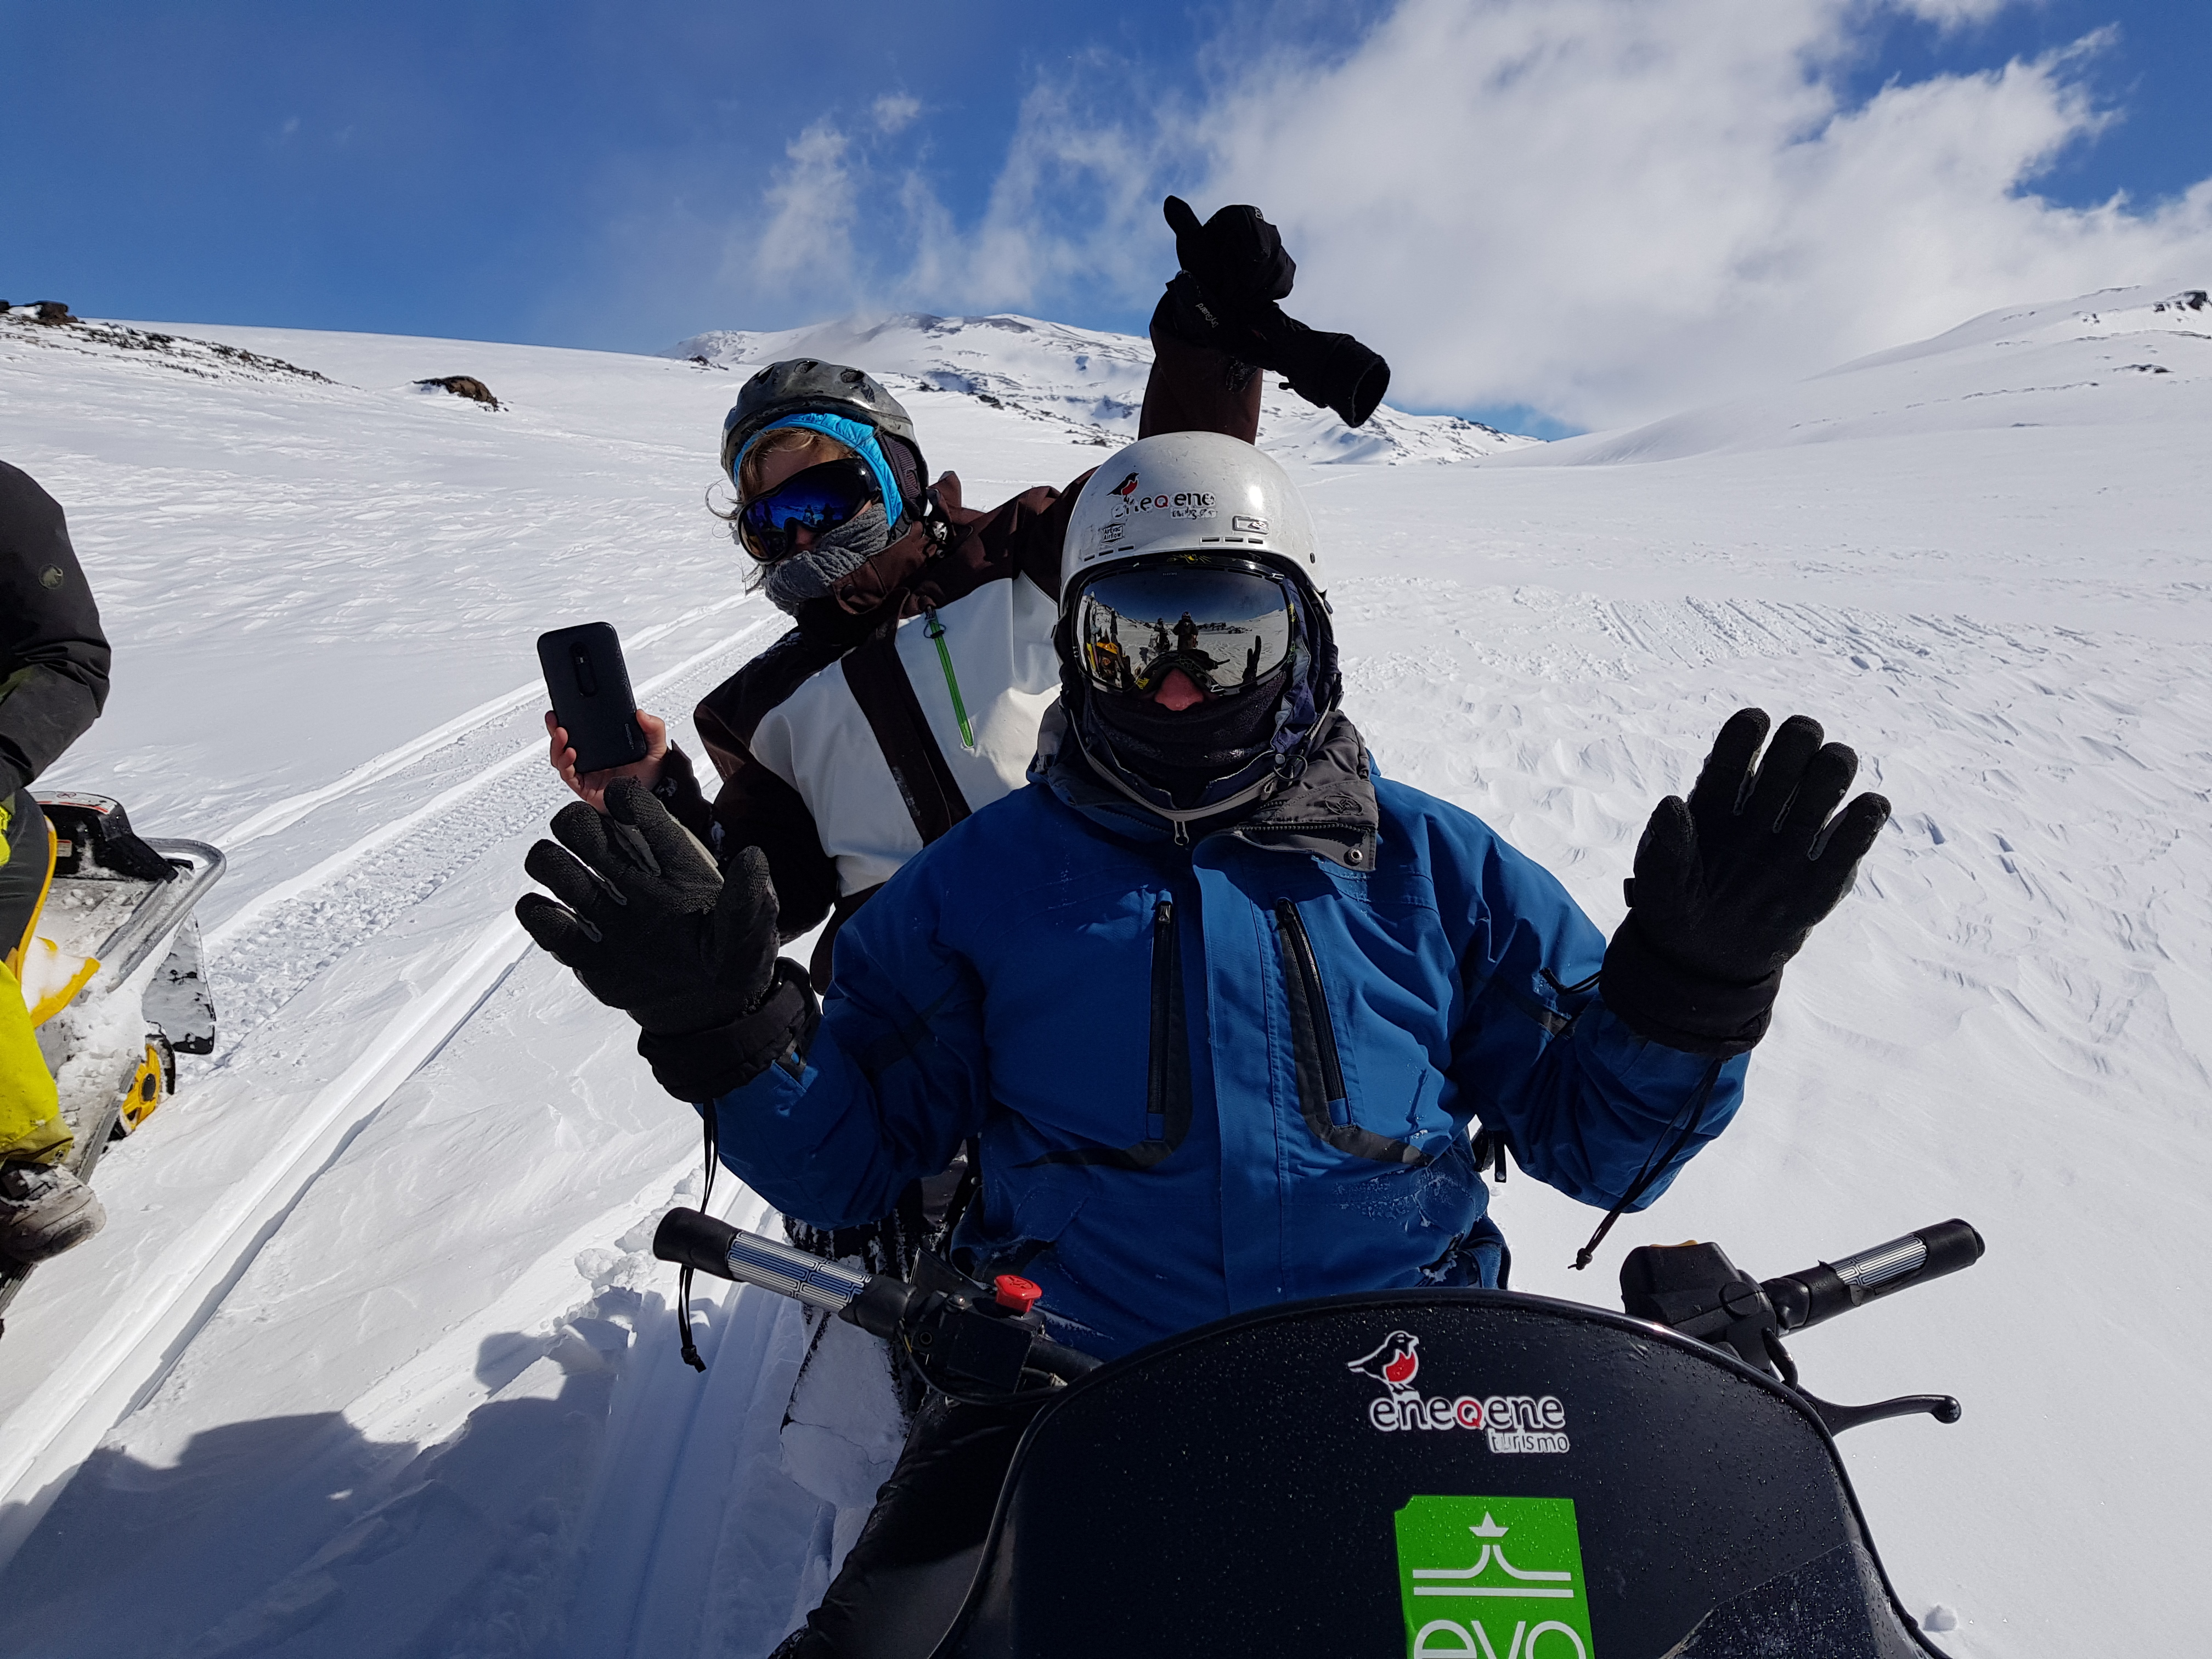  Gafas de esquí de montaña, motos de nieve, deportes de